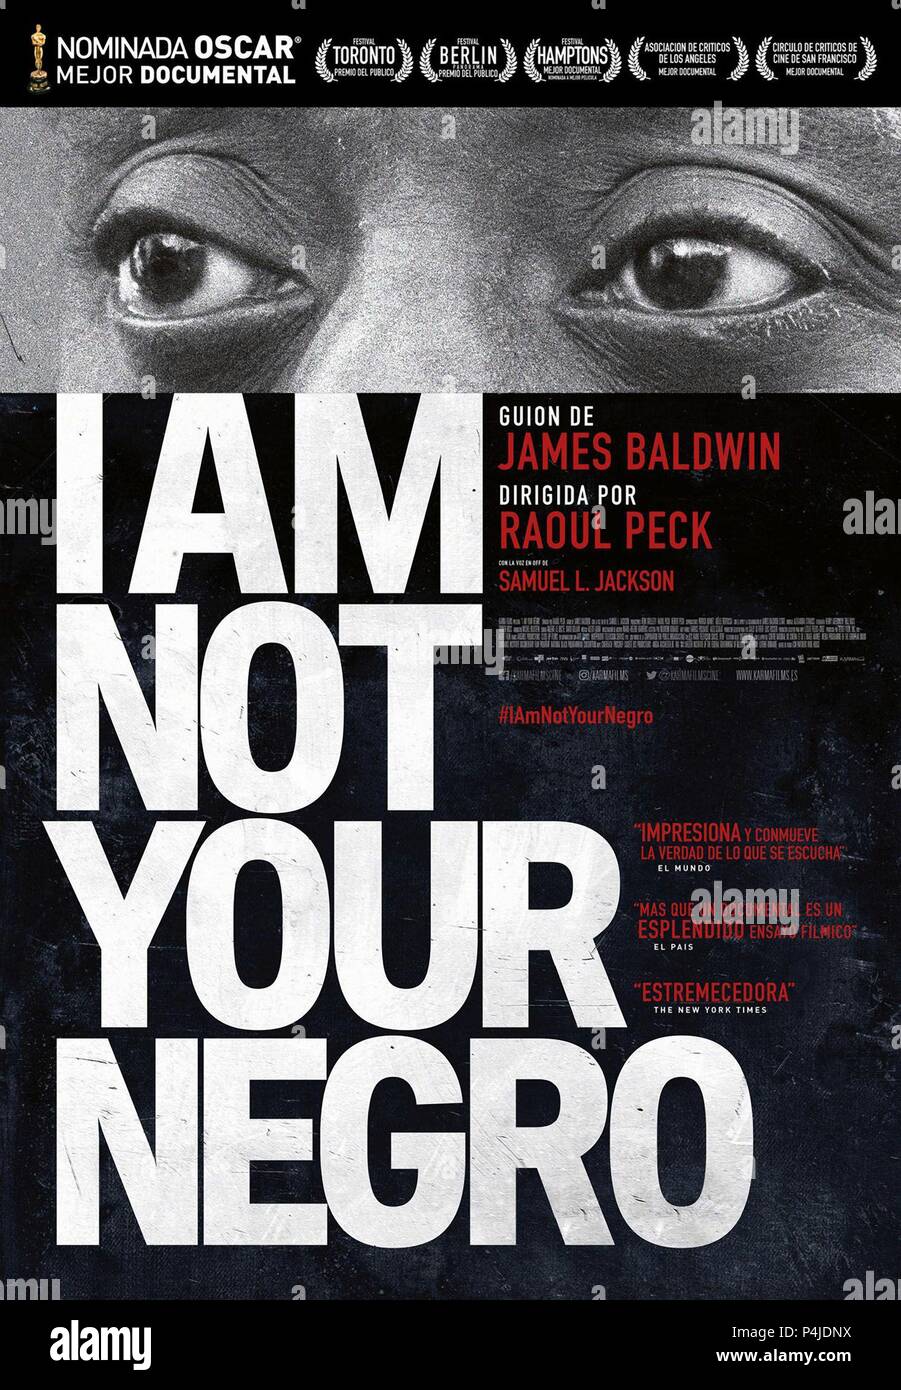 El título original de la película: No soy el negro. Título en inglés: NO SOY EL NEGRO. El director de cine: RAOUL PECK. Año: 2016. Crédito: película de terciopelo / Álbum Foto de stock